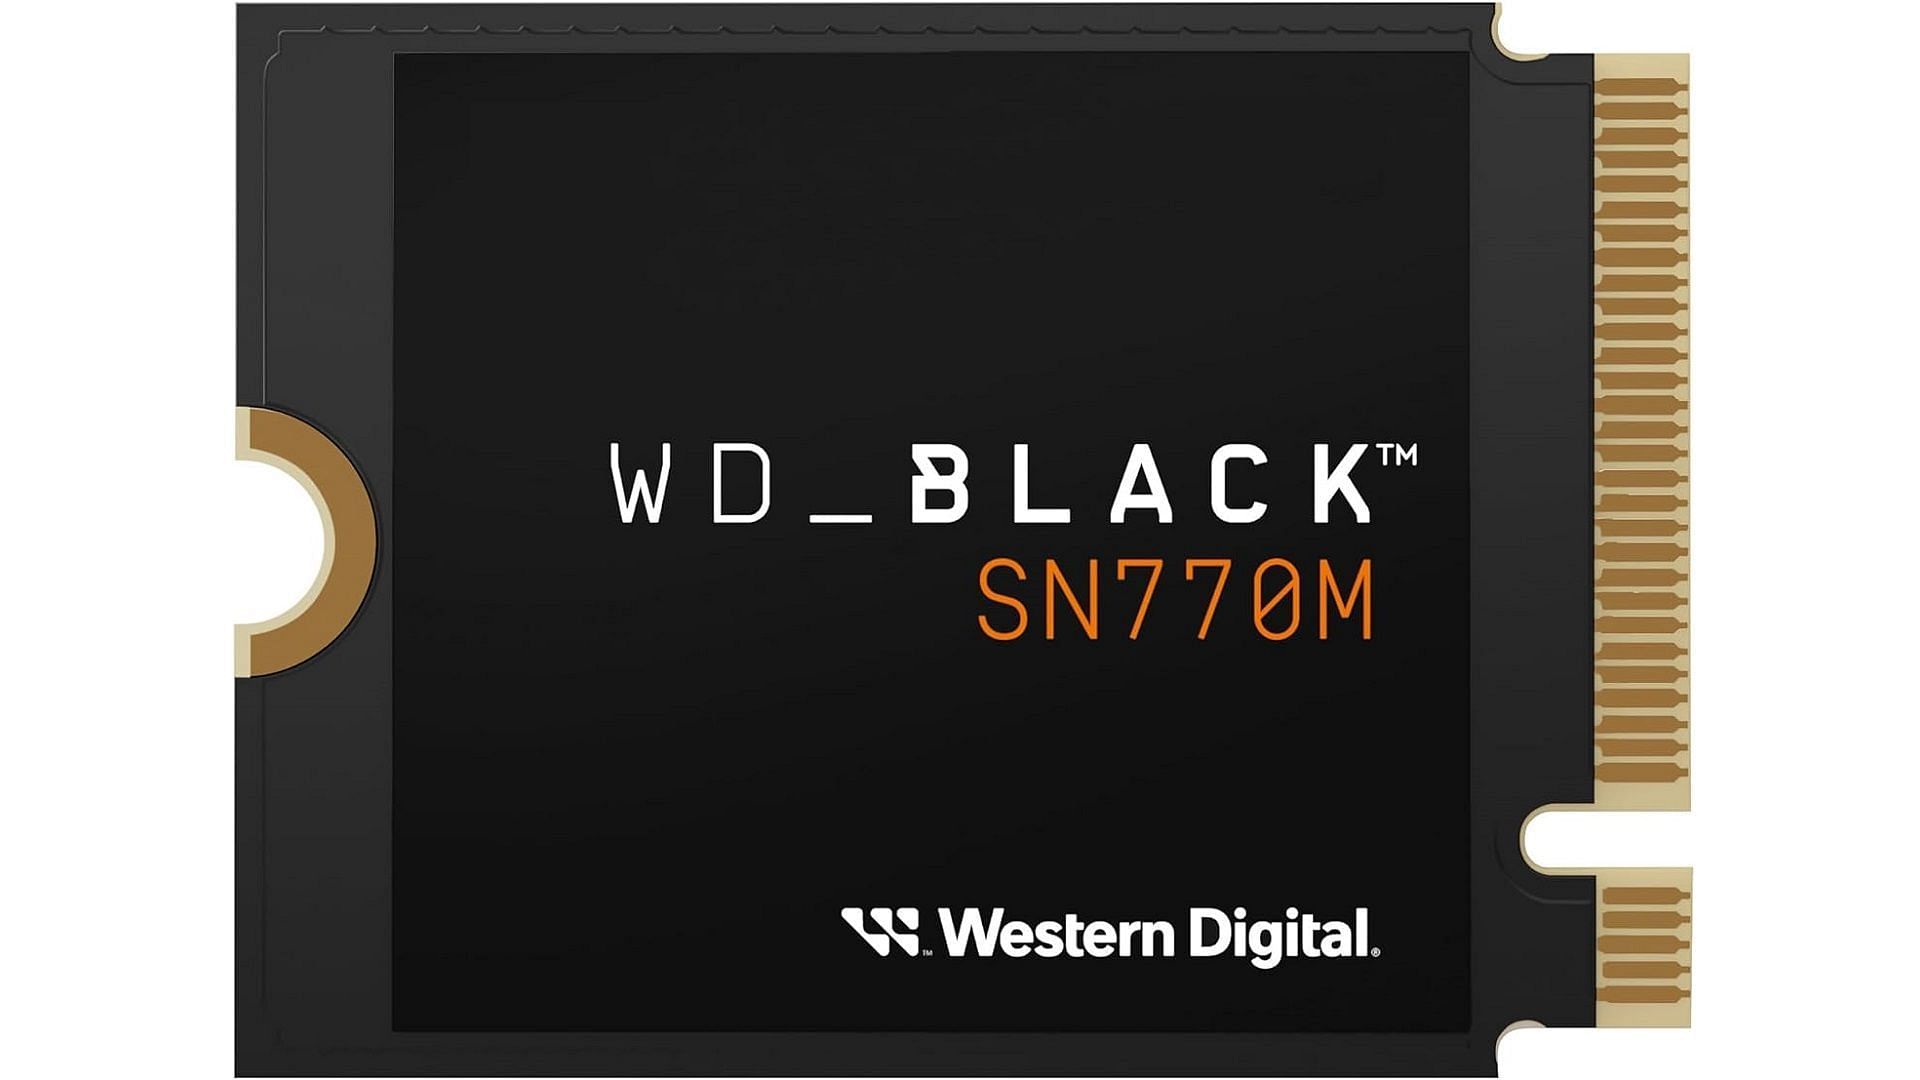 WD_BLACK SN770M 1TB NVMe SSD (Image via Amazon)